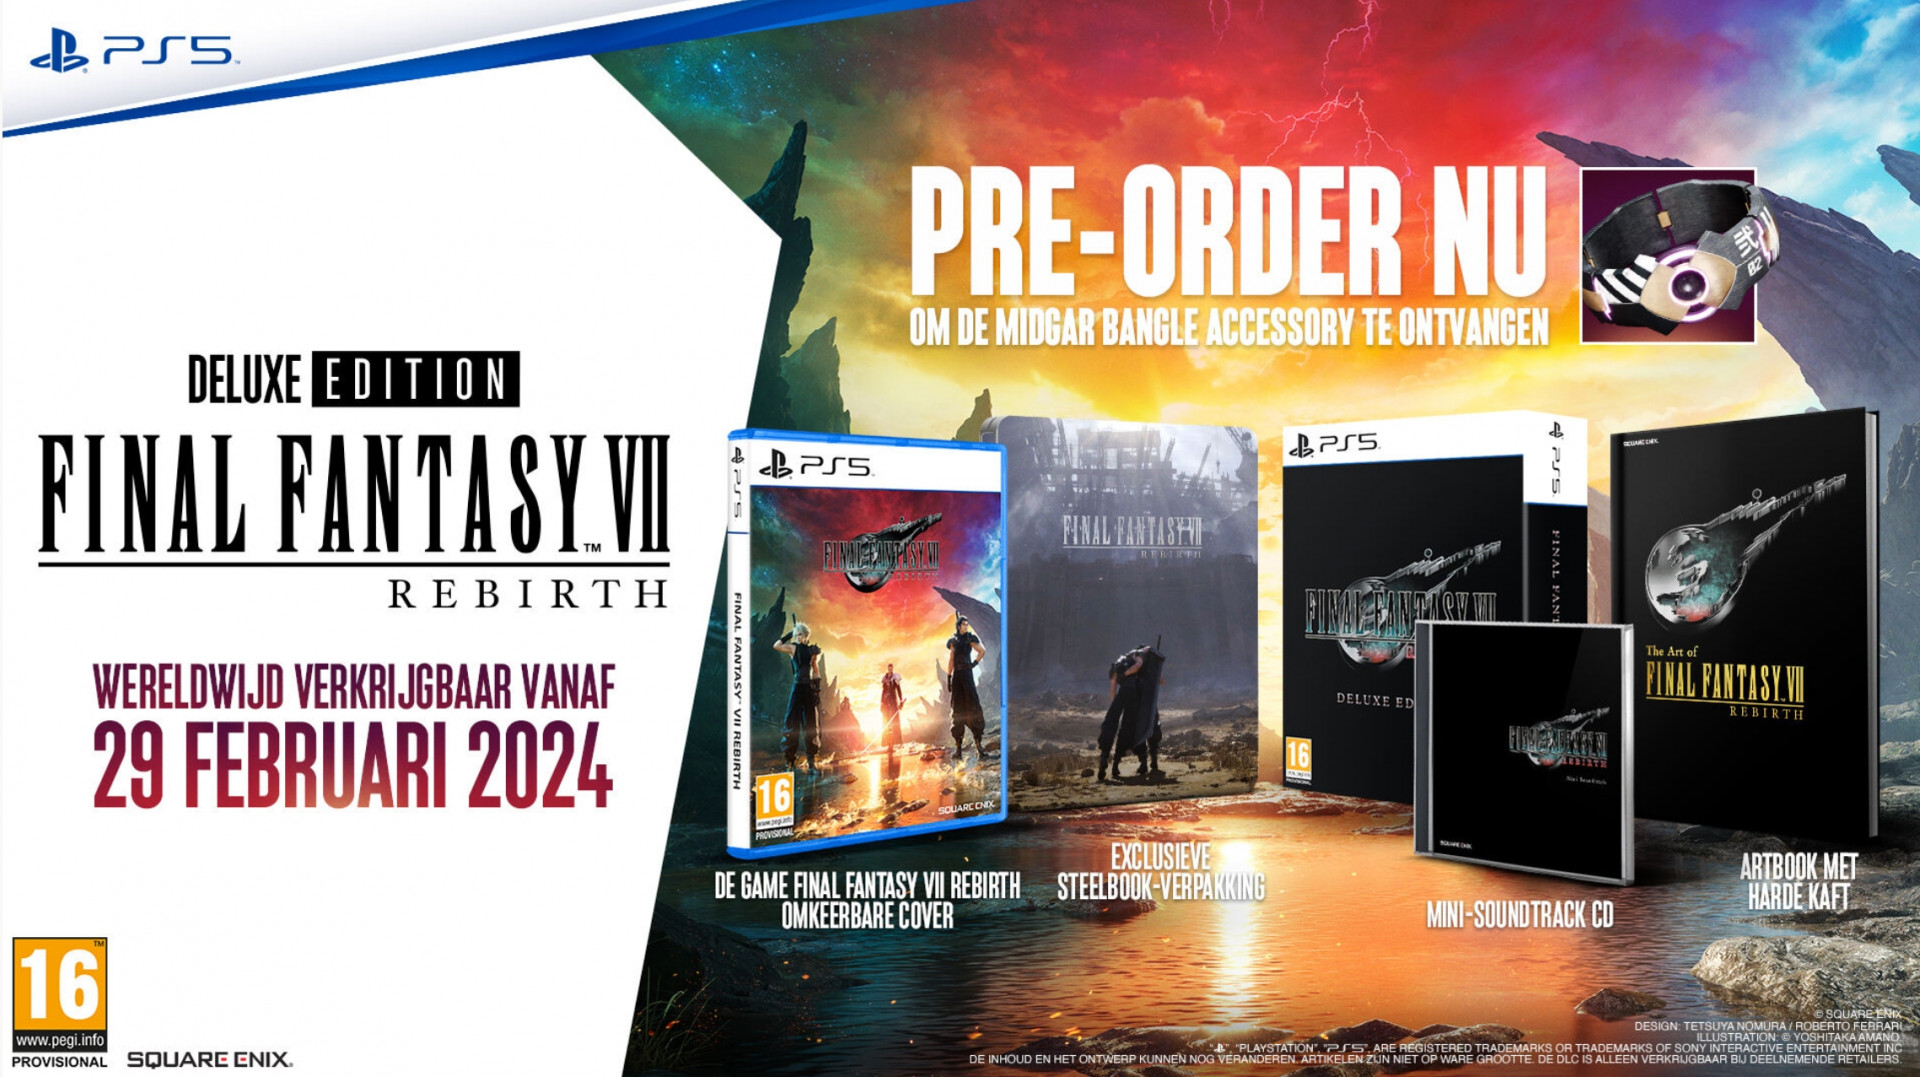 Final Fantasy VII Rebirth - Deluxe Edition (PS5), Square Enix